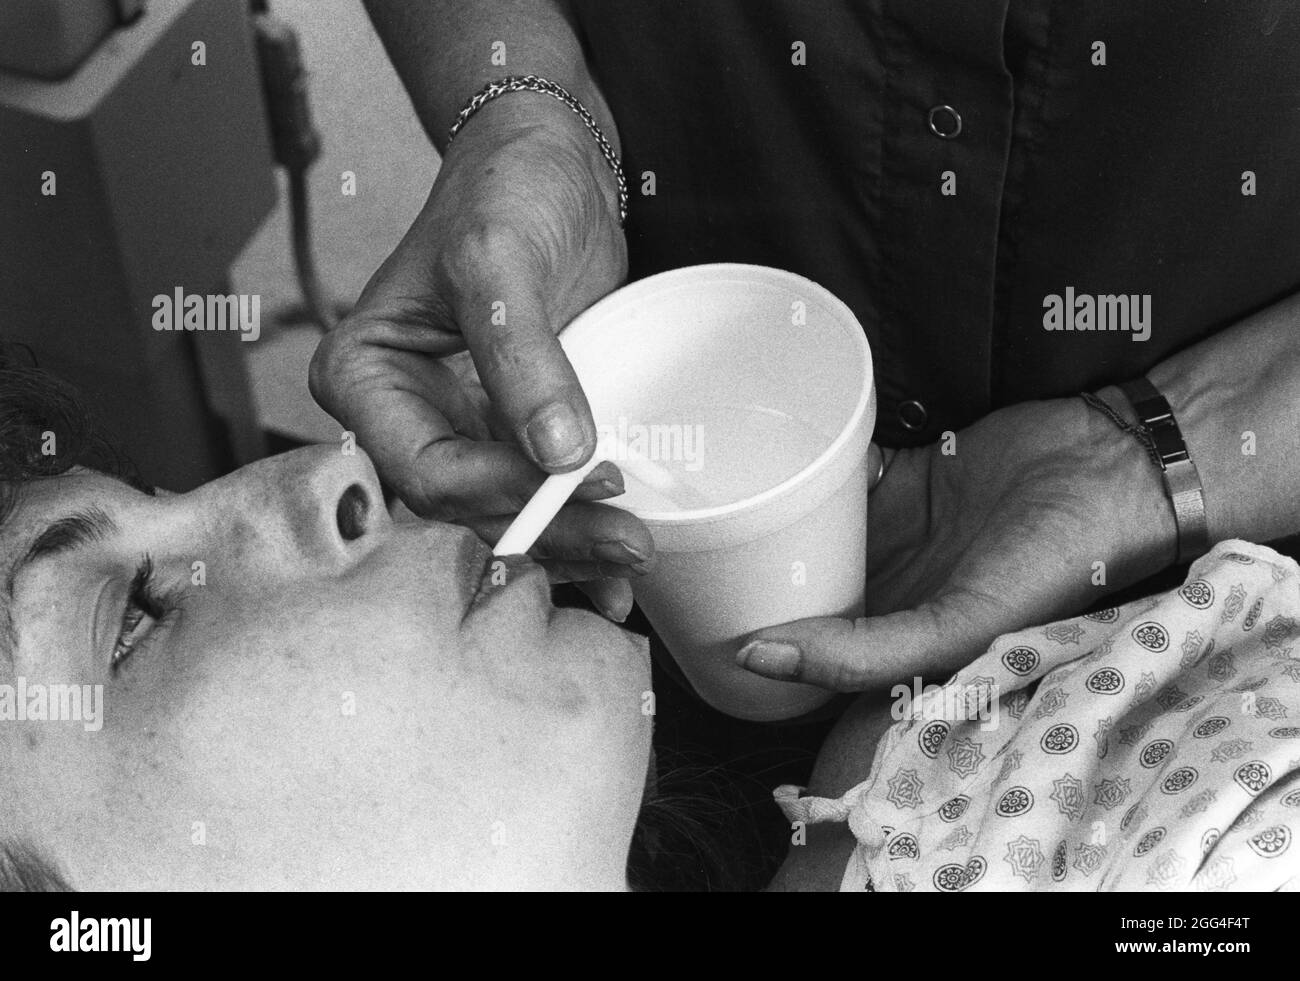 Austin Texas USA, vers 1990: Une patiente de l'hôpital boit de l'eau pour évacuer les liquides d'essai utilisés pour les tests médicaux. ©Bob Daemmrich Banque D'Images